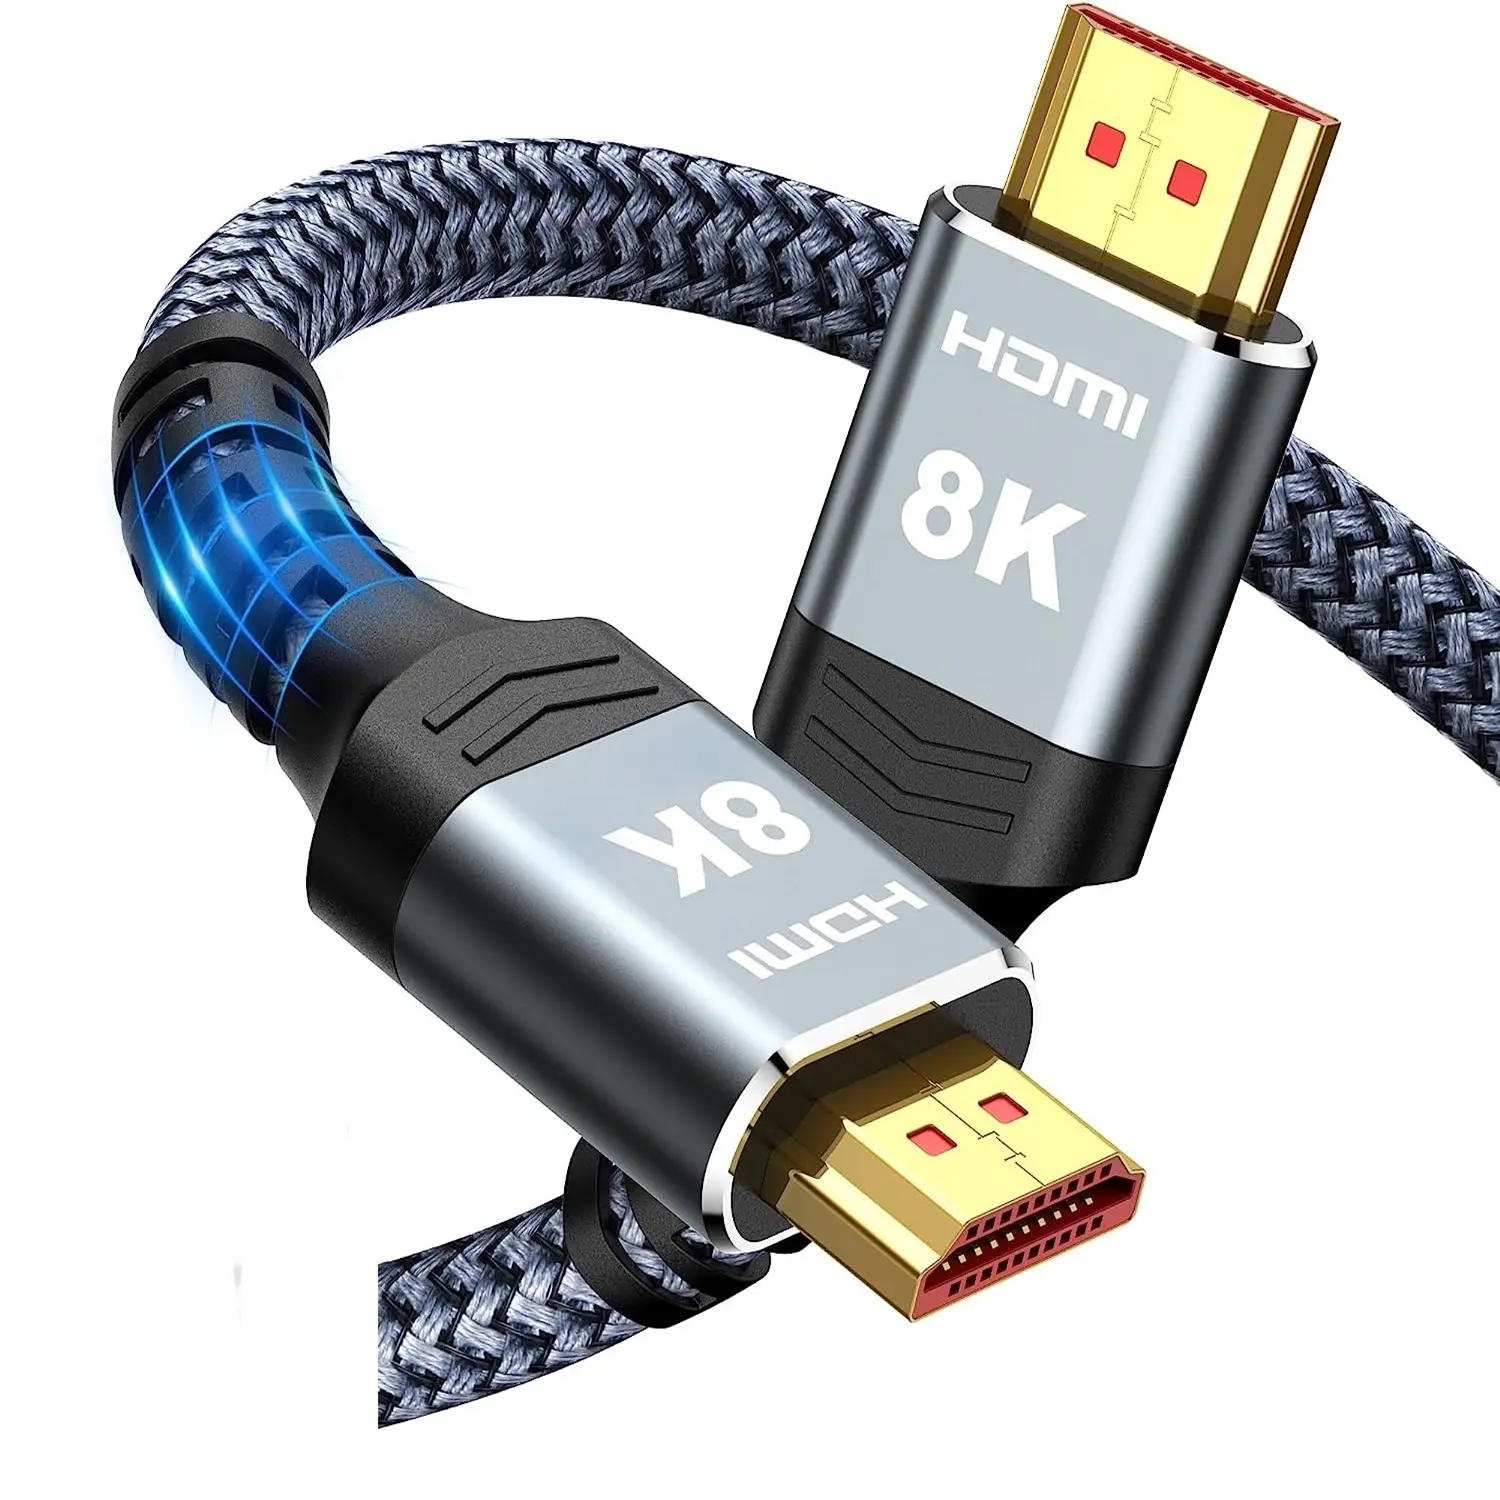 כבל HDMI במהירות גבוהה 10 K 8 K מוסמך, תמיכה 4K@120Hz 8K@60Hz HDMI 2.1 כבל HDMI כבל HDTV וכו'